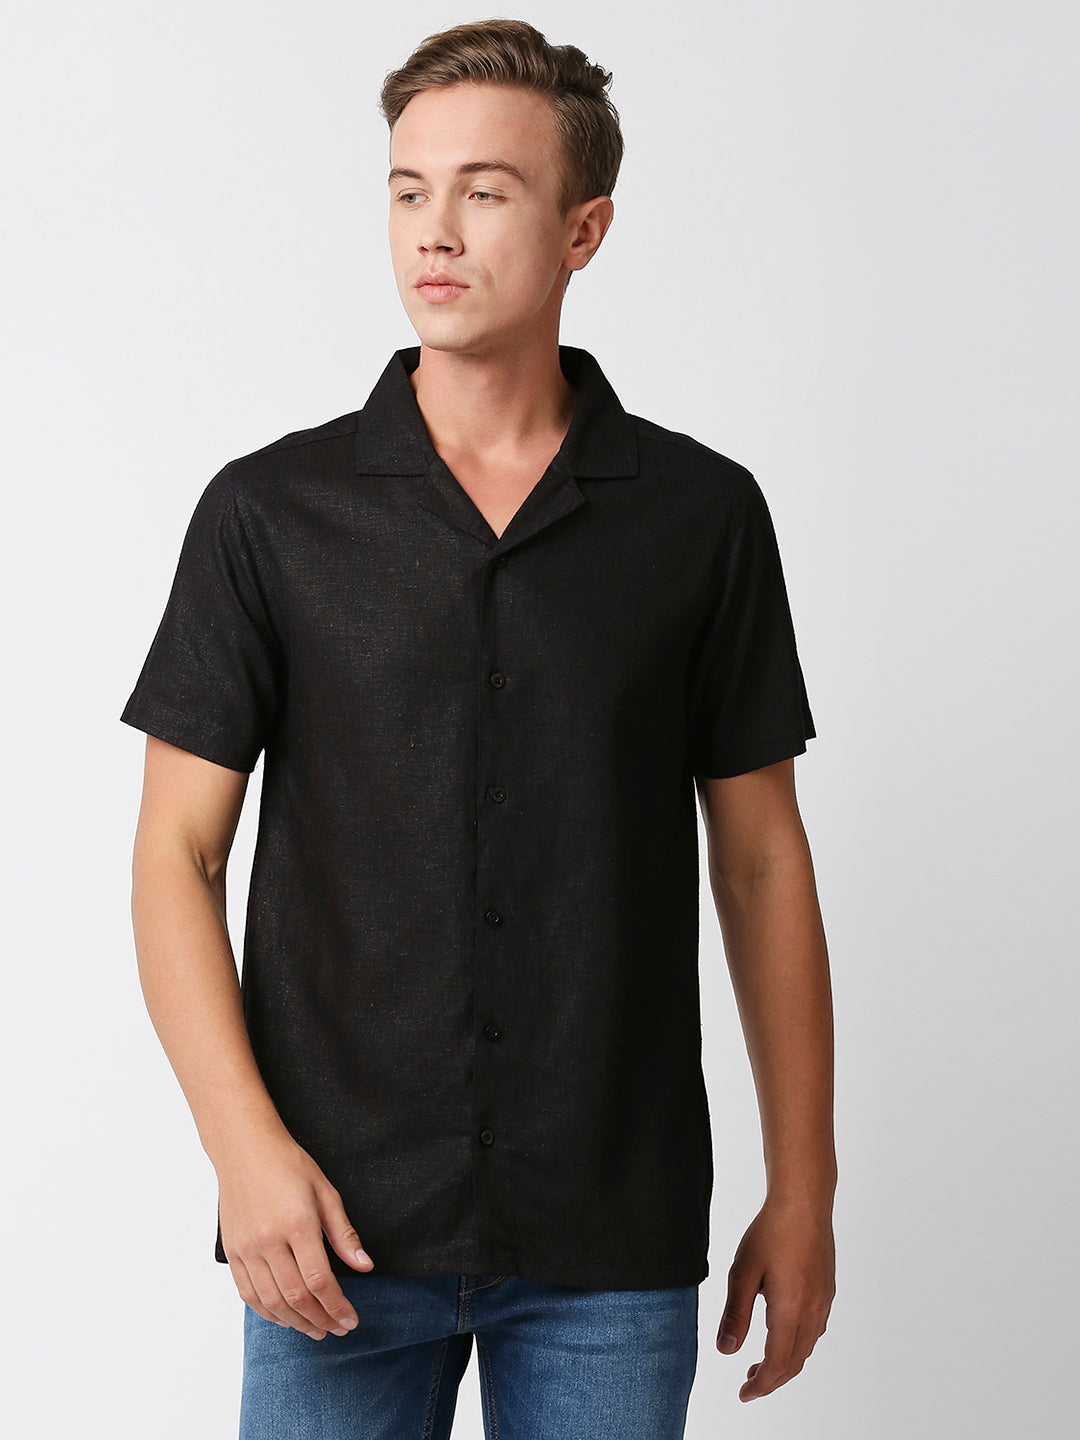 Verano Hemp Bamboo Black Shirt